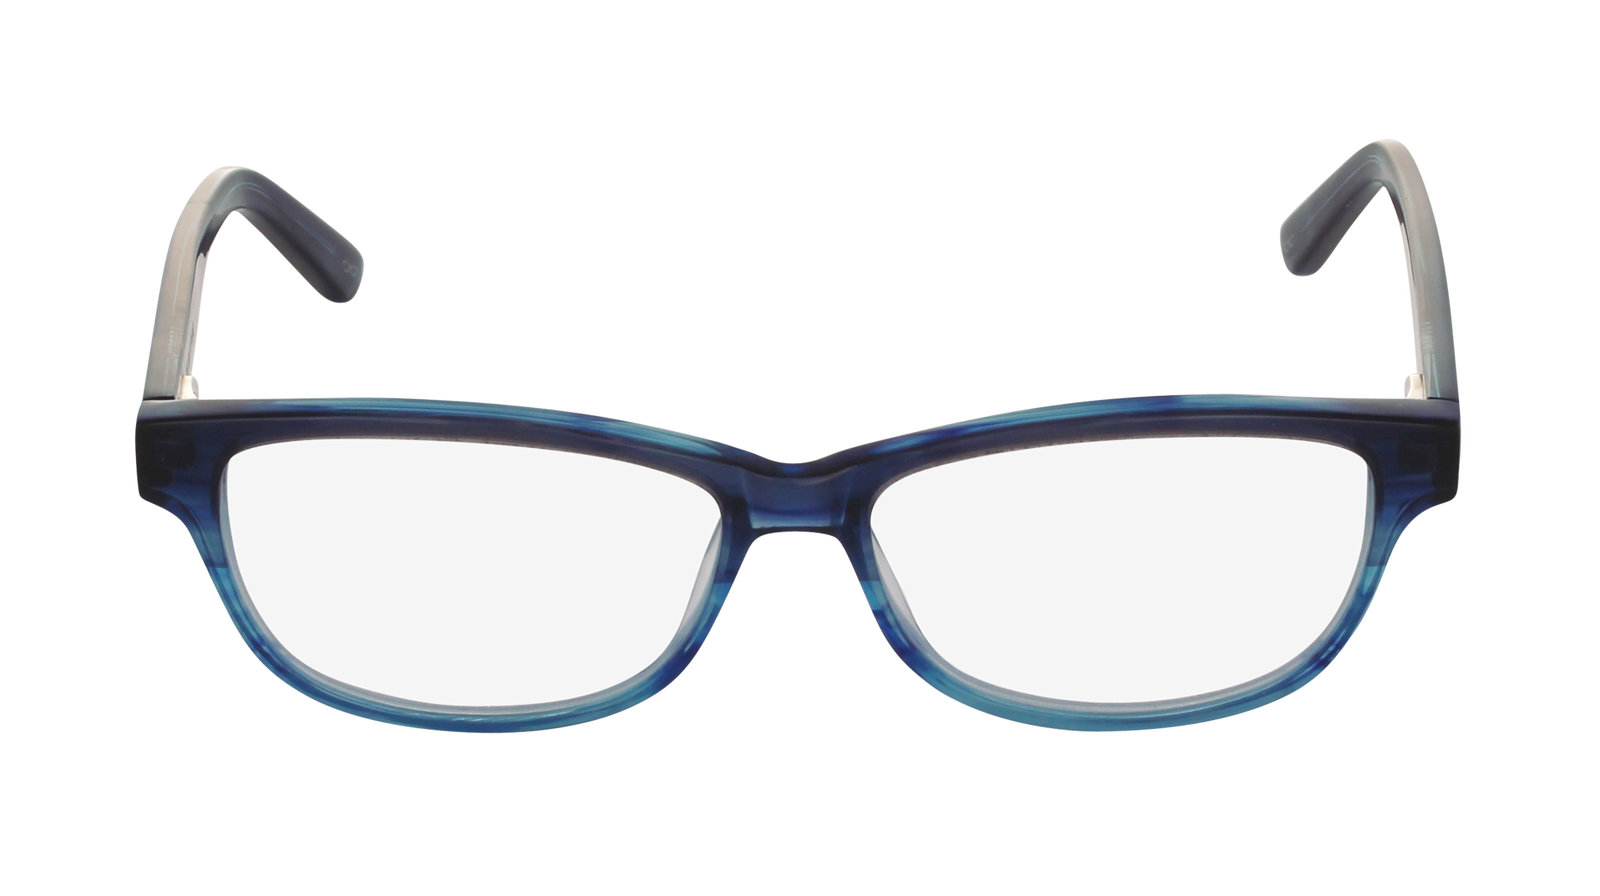 Goggles clipart brown glass. Sunglasses clip art glasses